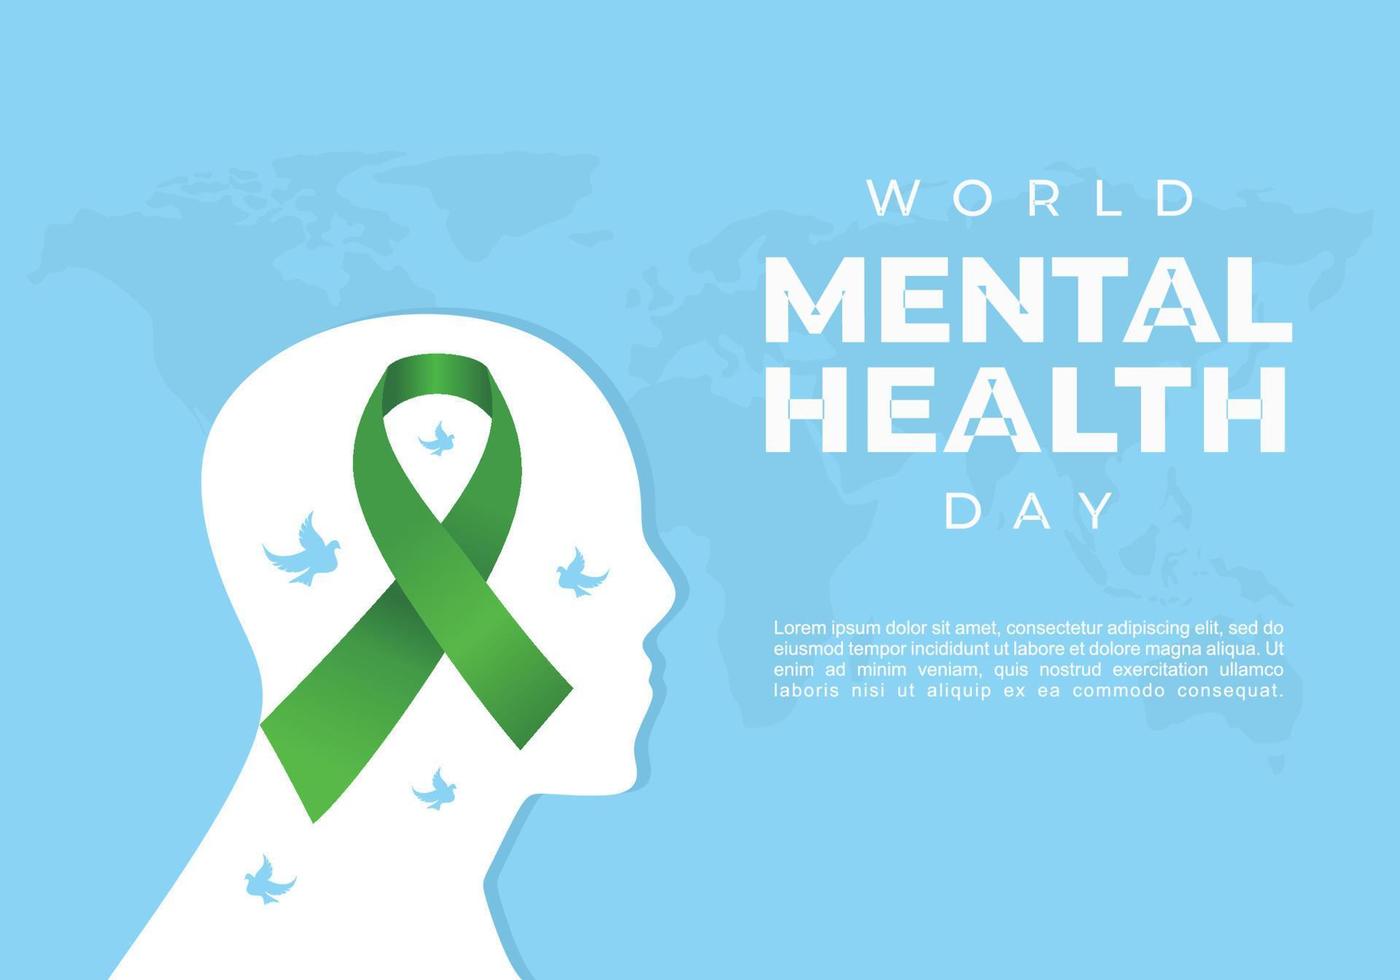 fundo do dia mundial da saúde mental comemorado em 10 de outubro. vetor